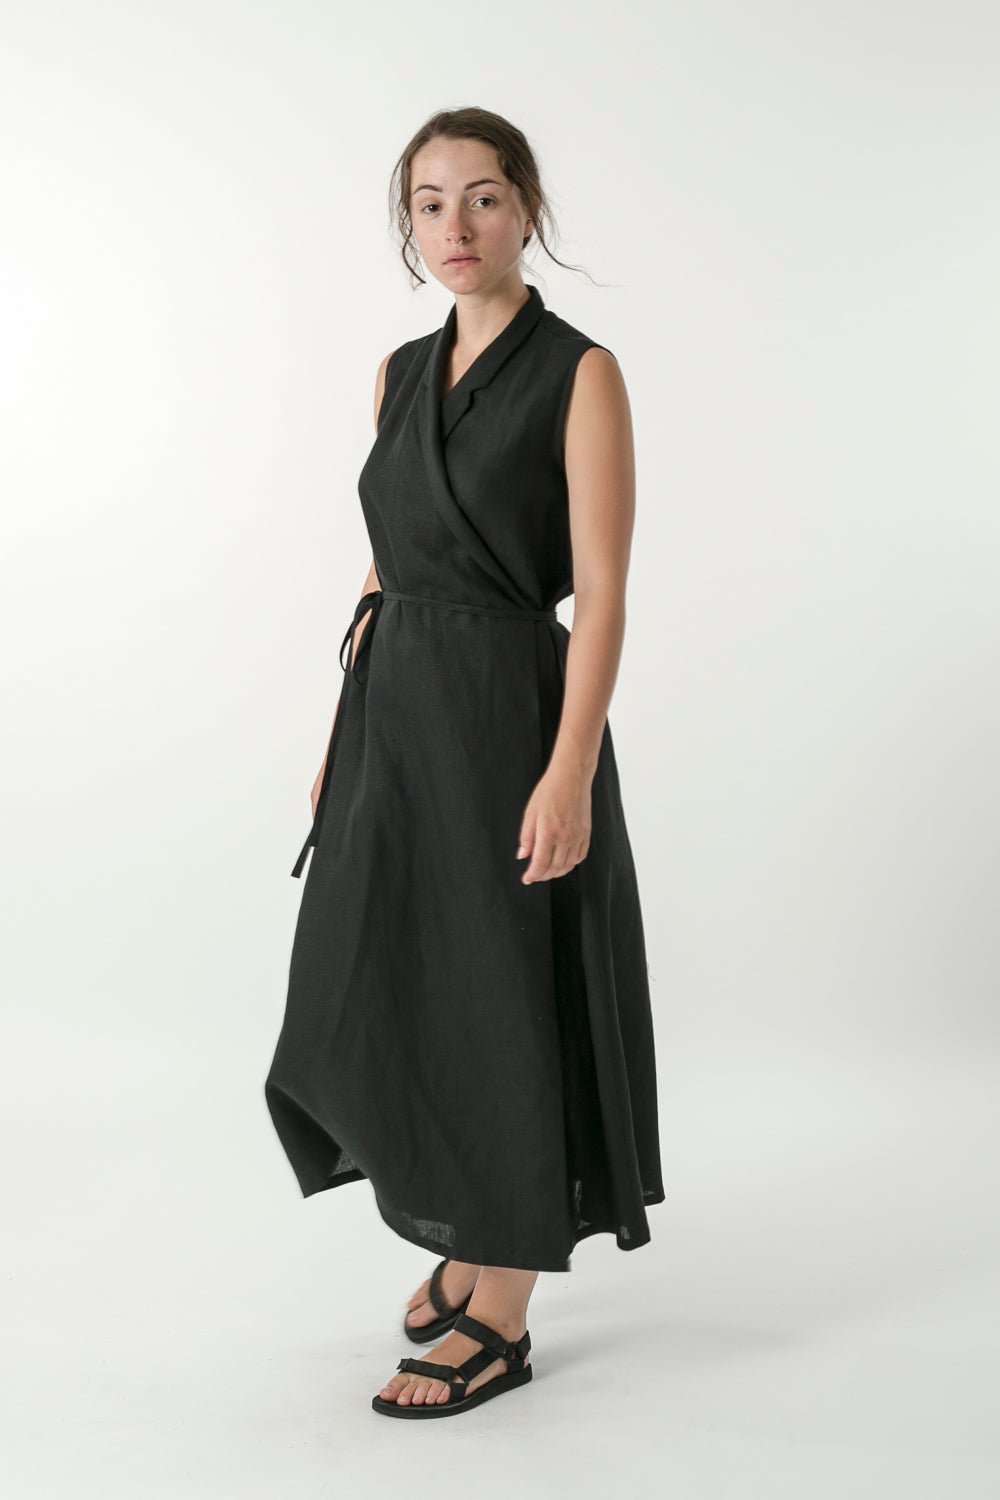 Hemp Linen Sleeveless Wrap Dress - Ensemble Studios